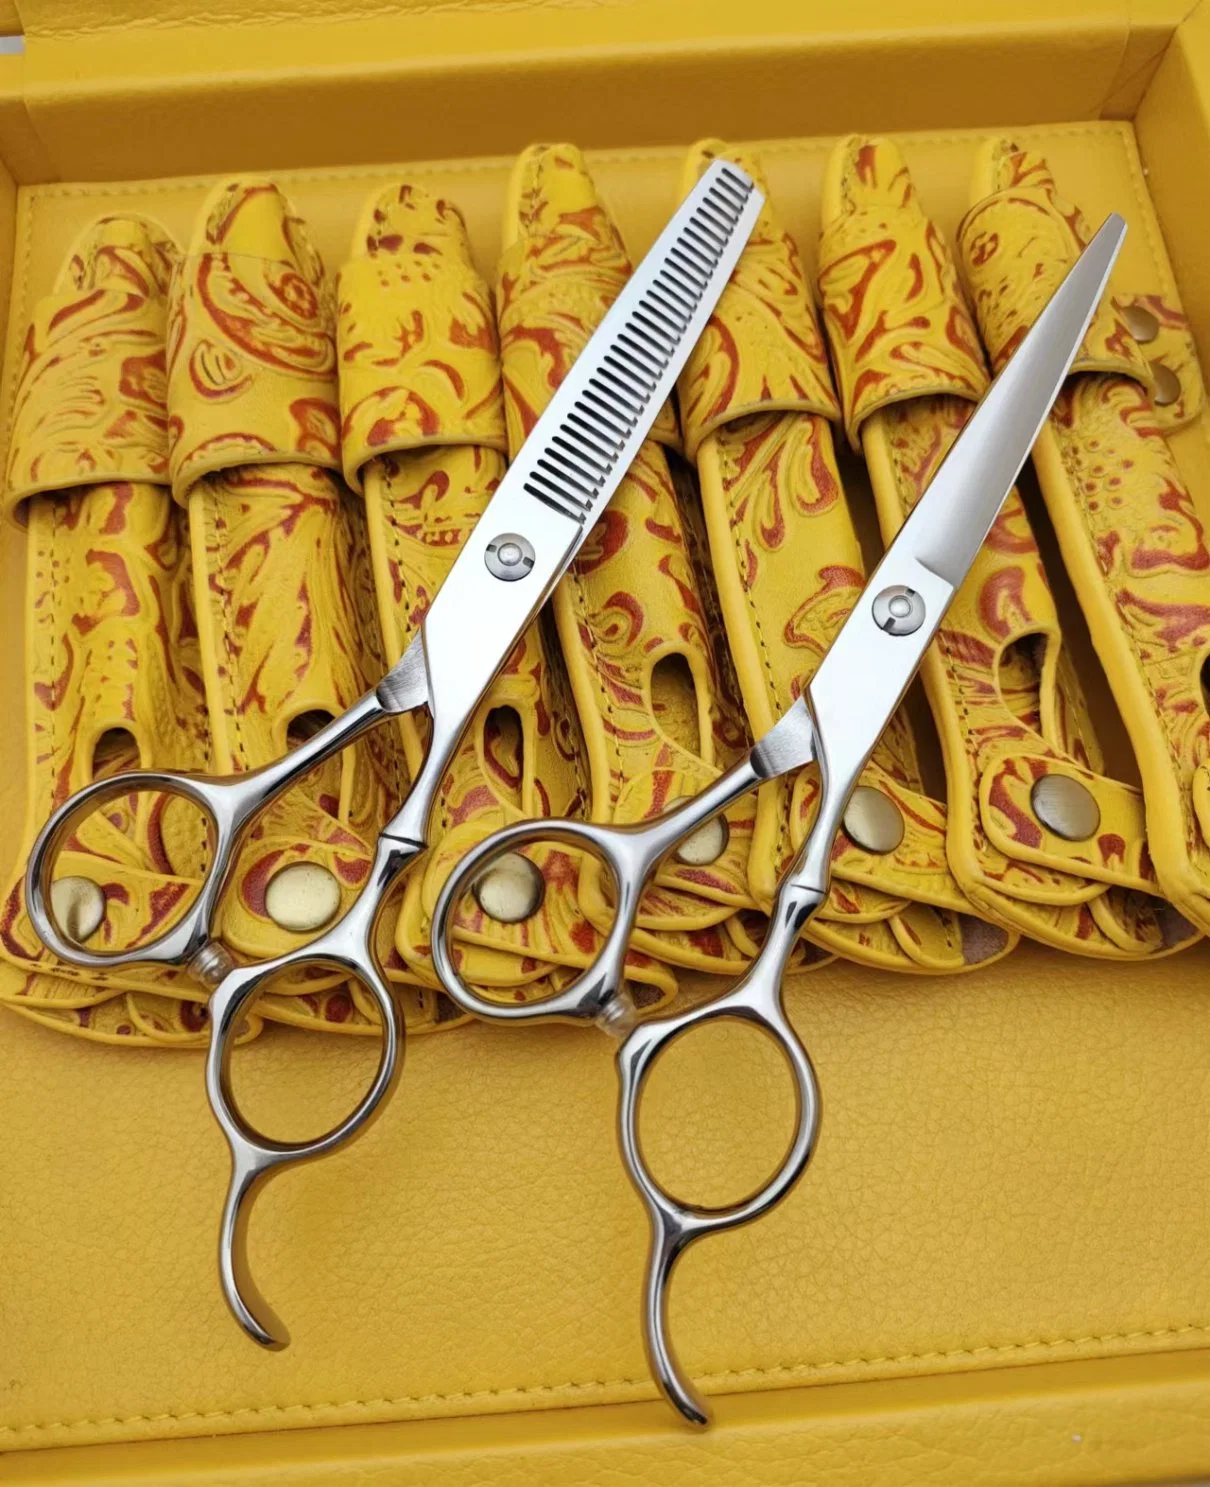 Stainless Steel Hair Scissors Barber Scissors Salon Household Scissors